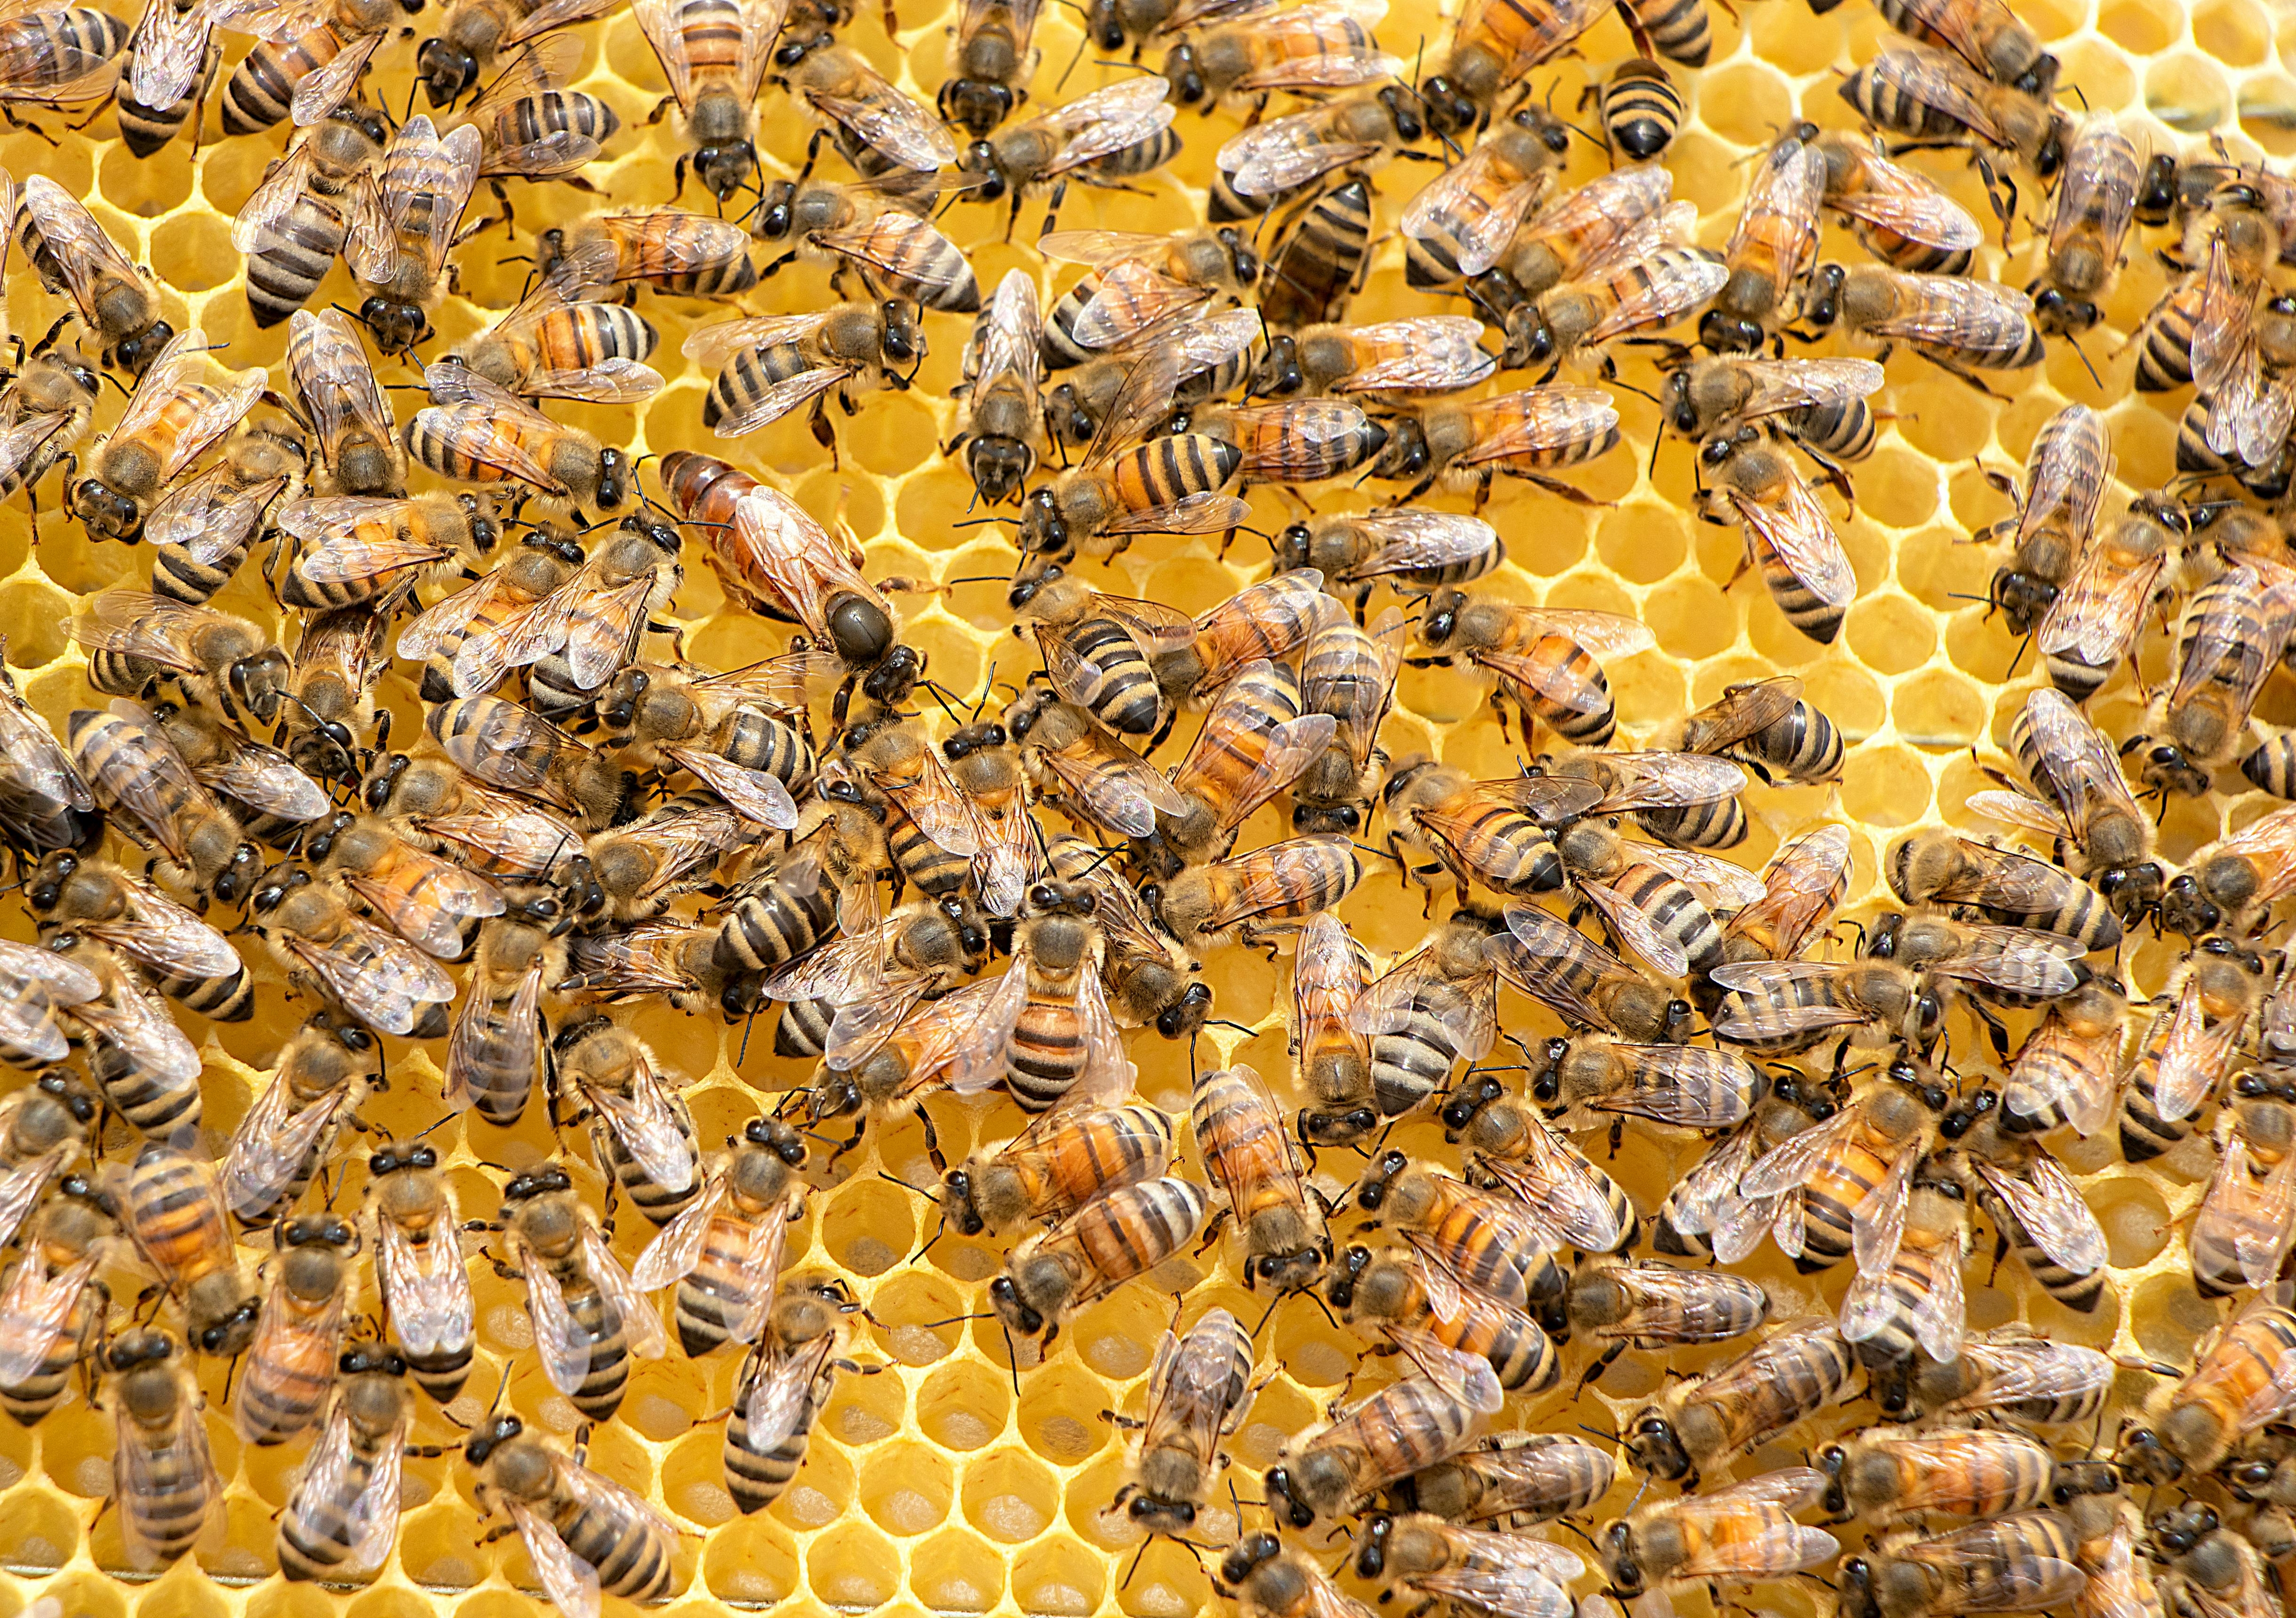 꿀벌은 식물의 꽃가루를 옮겨주는 대표적인 수분 매개곤충이다. 지구 온난화로 기온이 올라가고, 대기가 건조해지면서 꿀벌의 개체수가 급격히 감소할 수 있다는 경고가 나왔다.   펙셀즈 제공